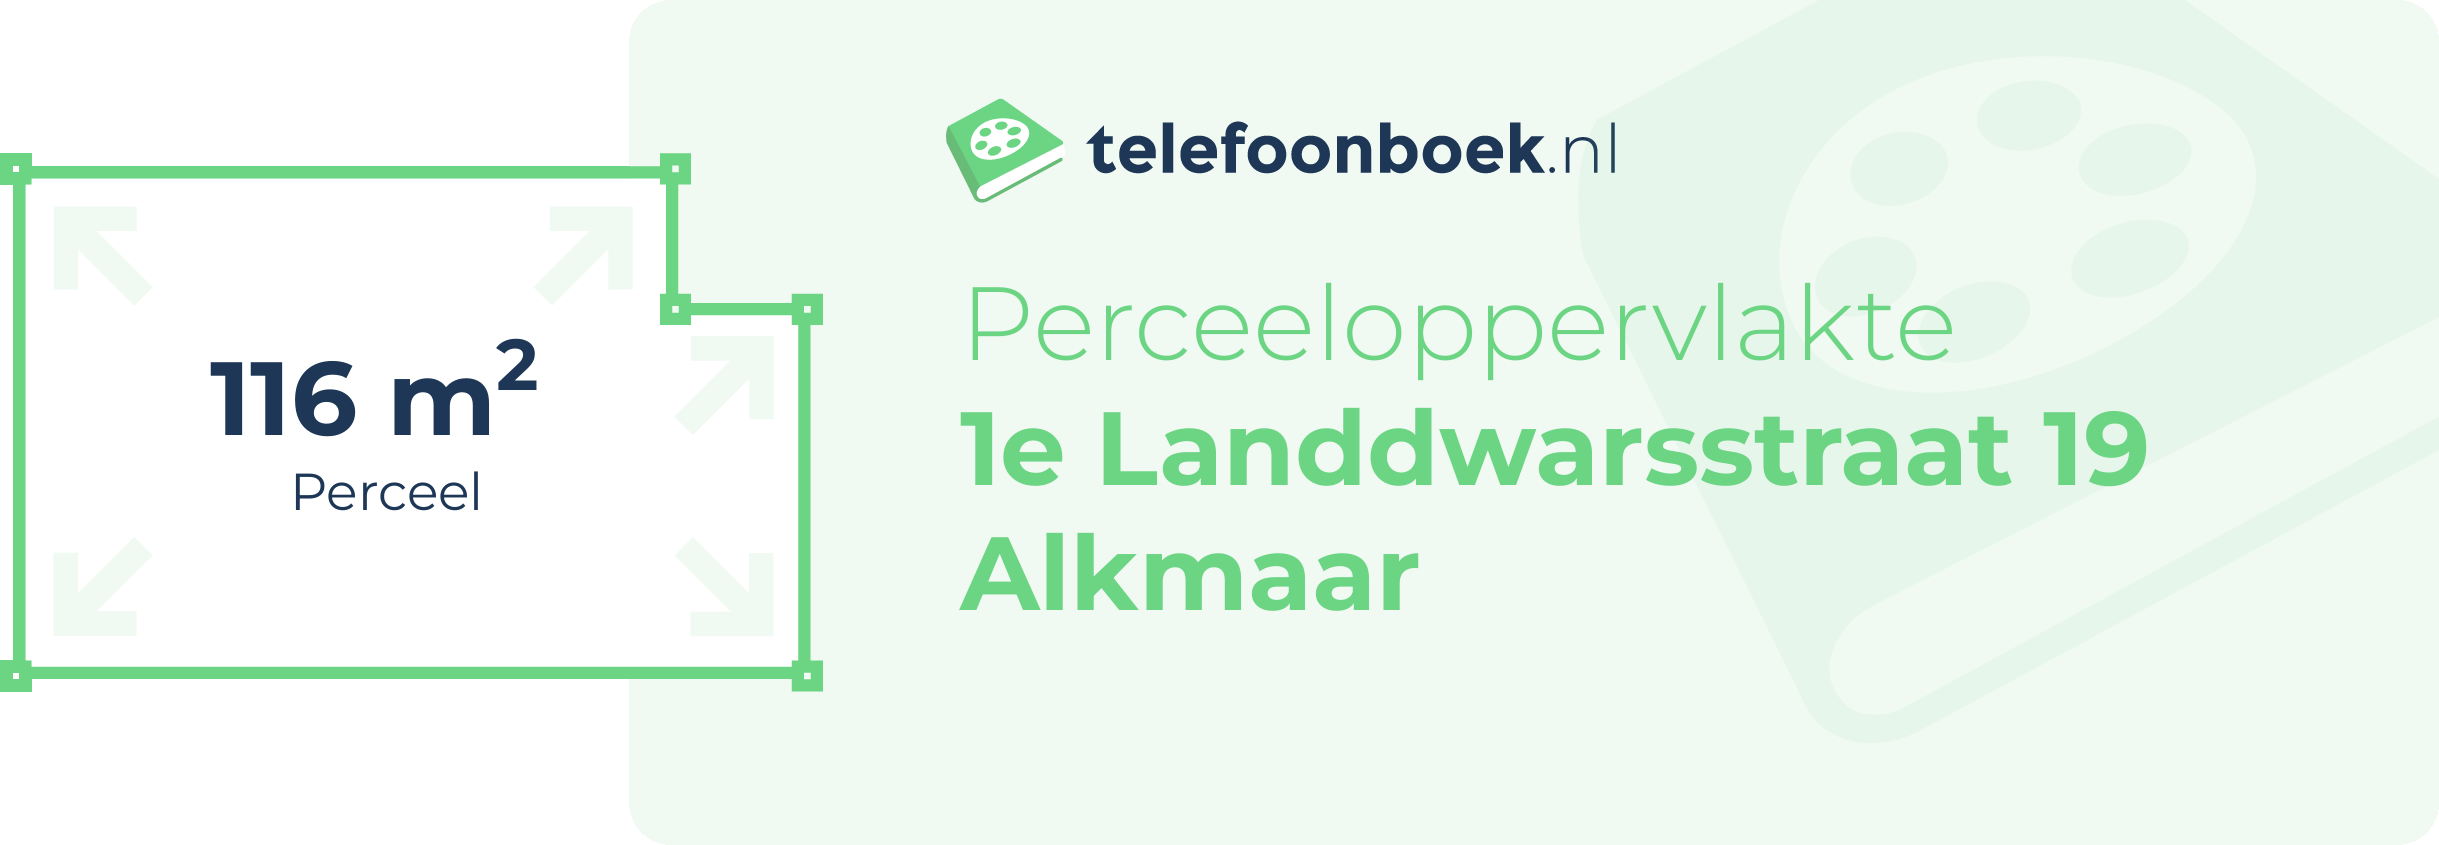 Perceeloppervlakte 1e Landdwarsstraat 19 Alkmaar